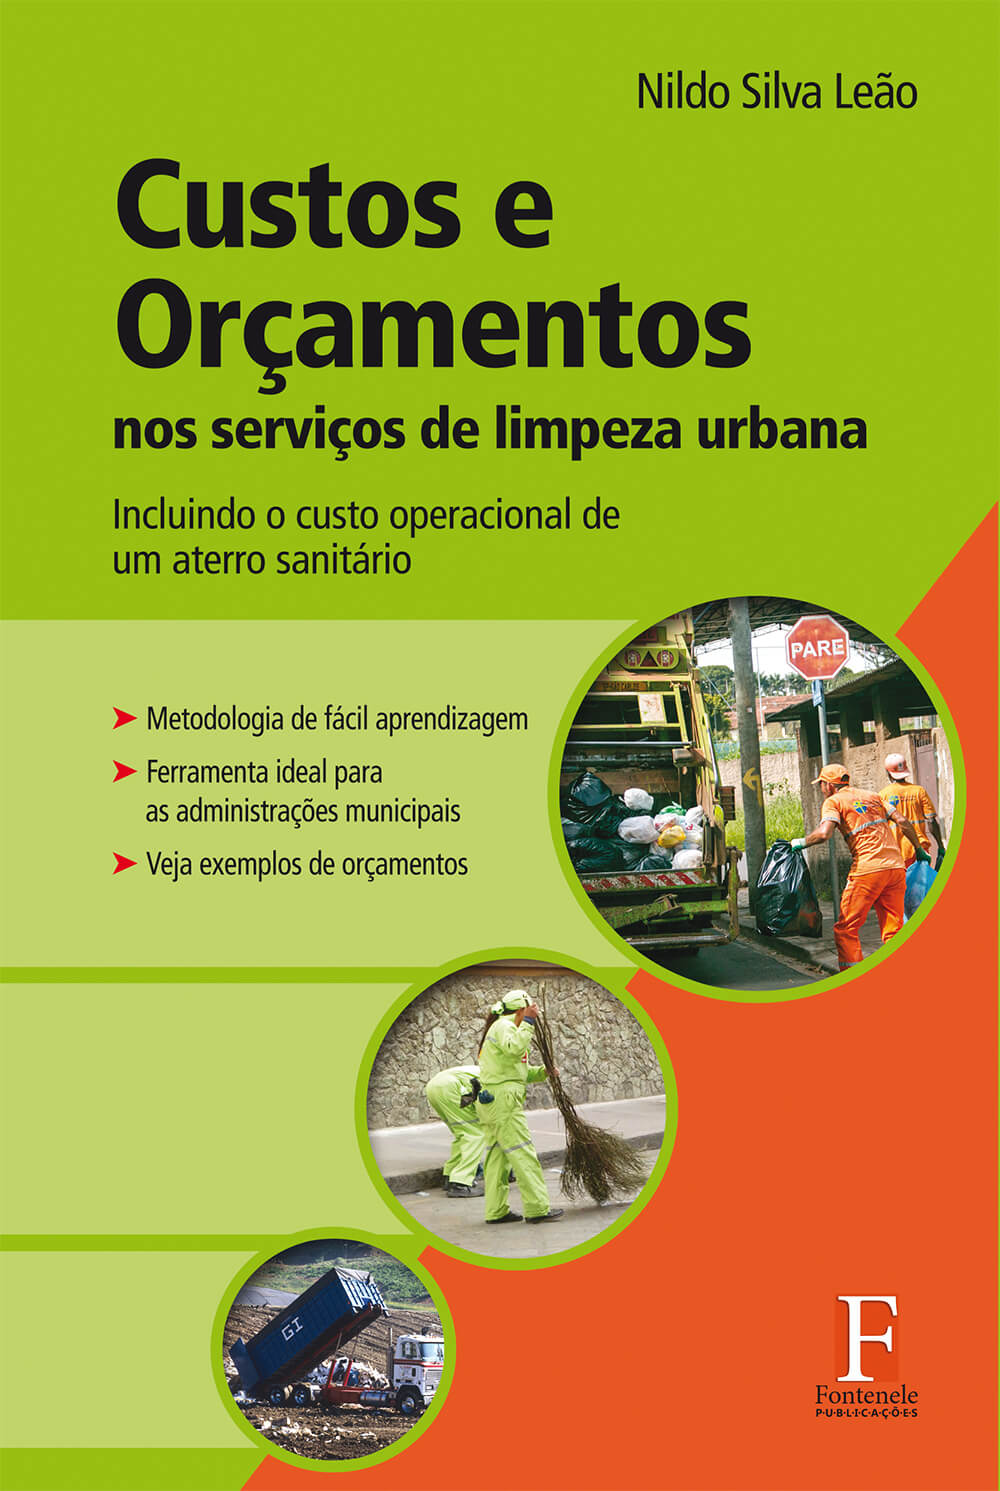 Fontenele Publicações / 11 95150-3481 / 11  95150-4383 Engenharias - Custos e Orçamentos nos serviços de limpeza urbana